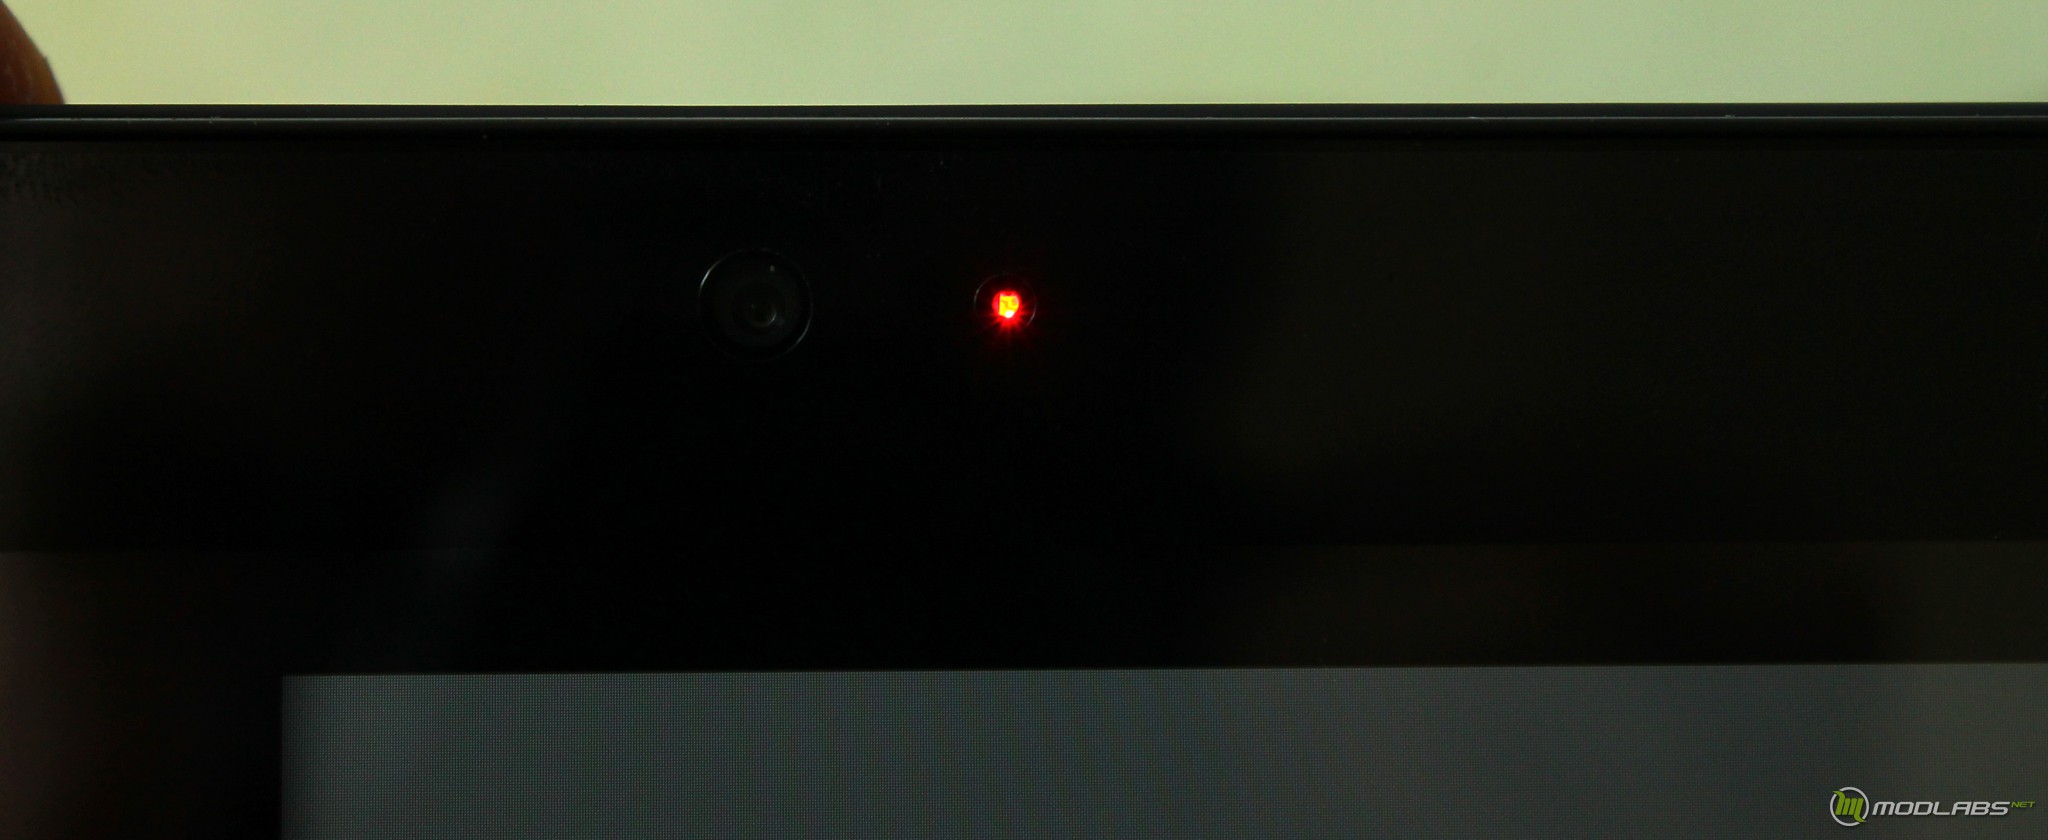 Красная кнопка телевизора мигает. Красные точки на экране телевизора. Красные мерцающие точки на мониторе. Красная лампочка на телевизоре. Камера с красной точкой.